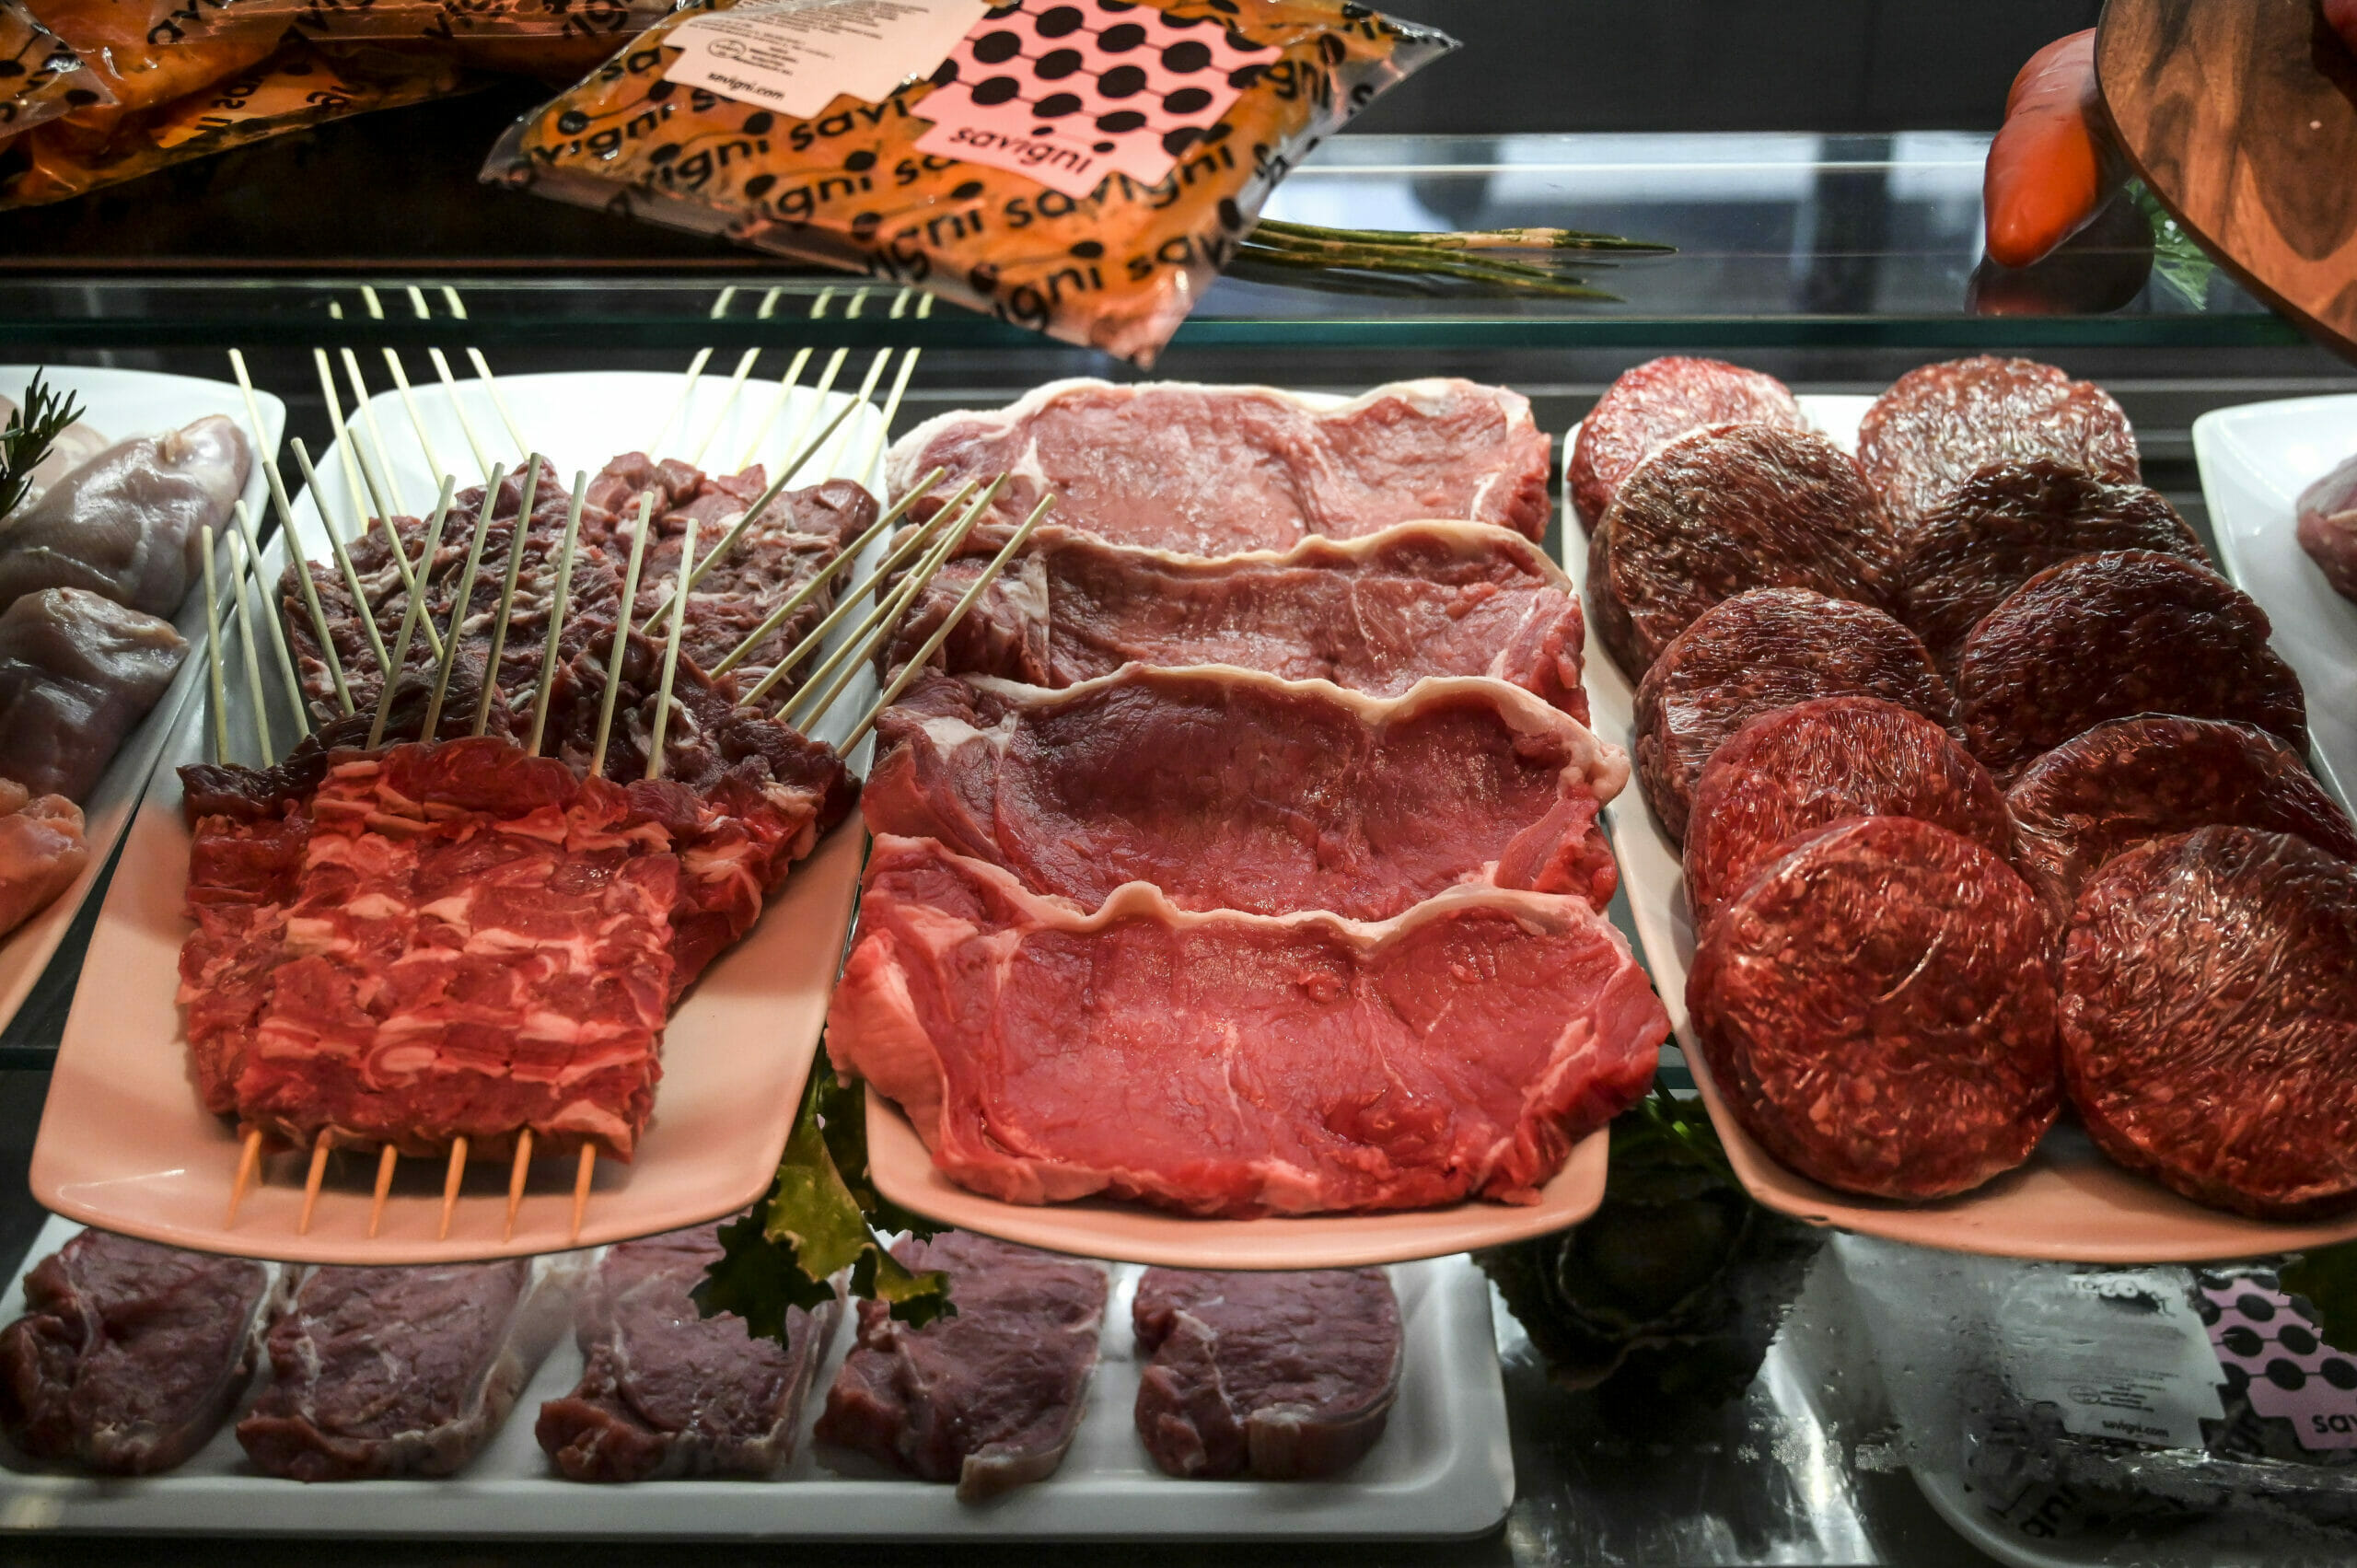 pochi-la-comprano-ma-questa-carne-economica-e-davvero-magra,-gustosa-e-proteica:-scarlett-johansson-ne-va-matta